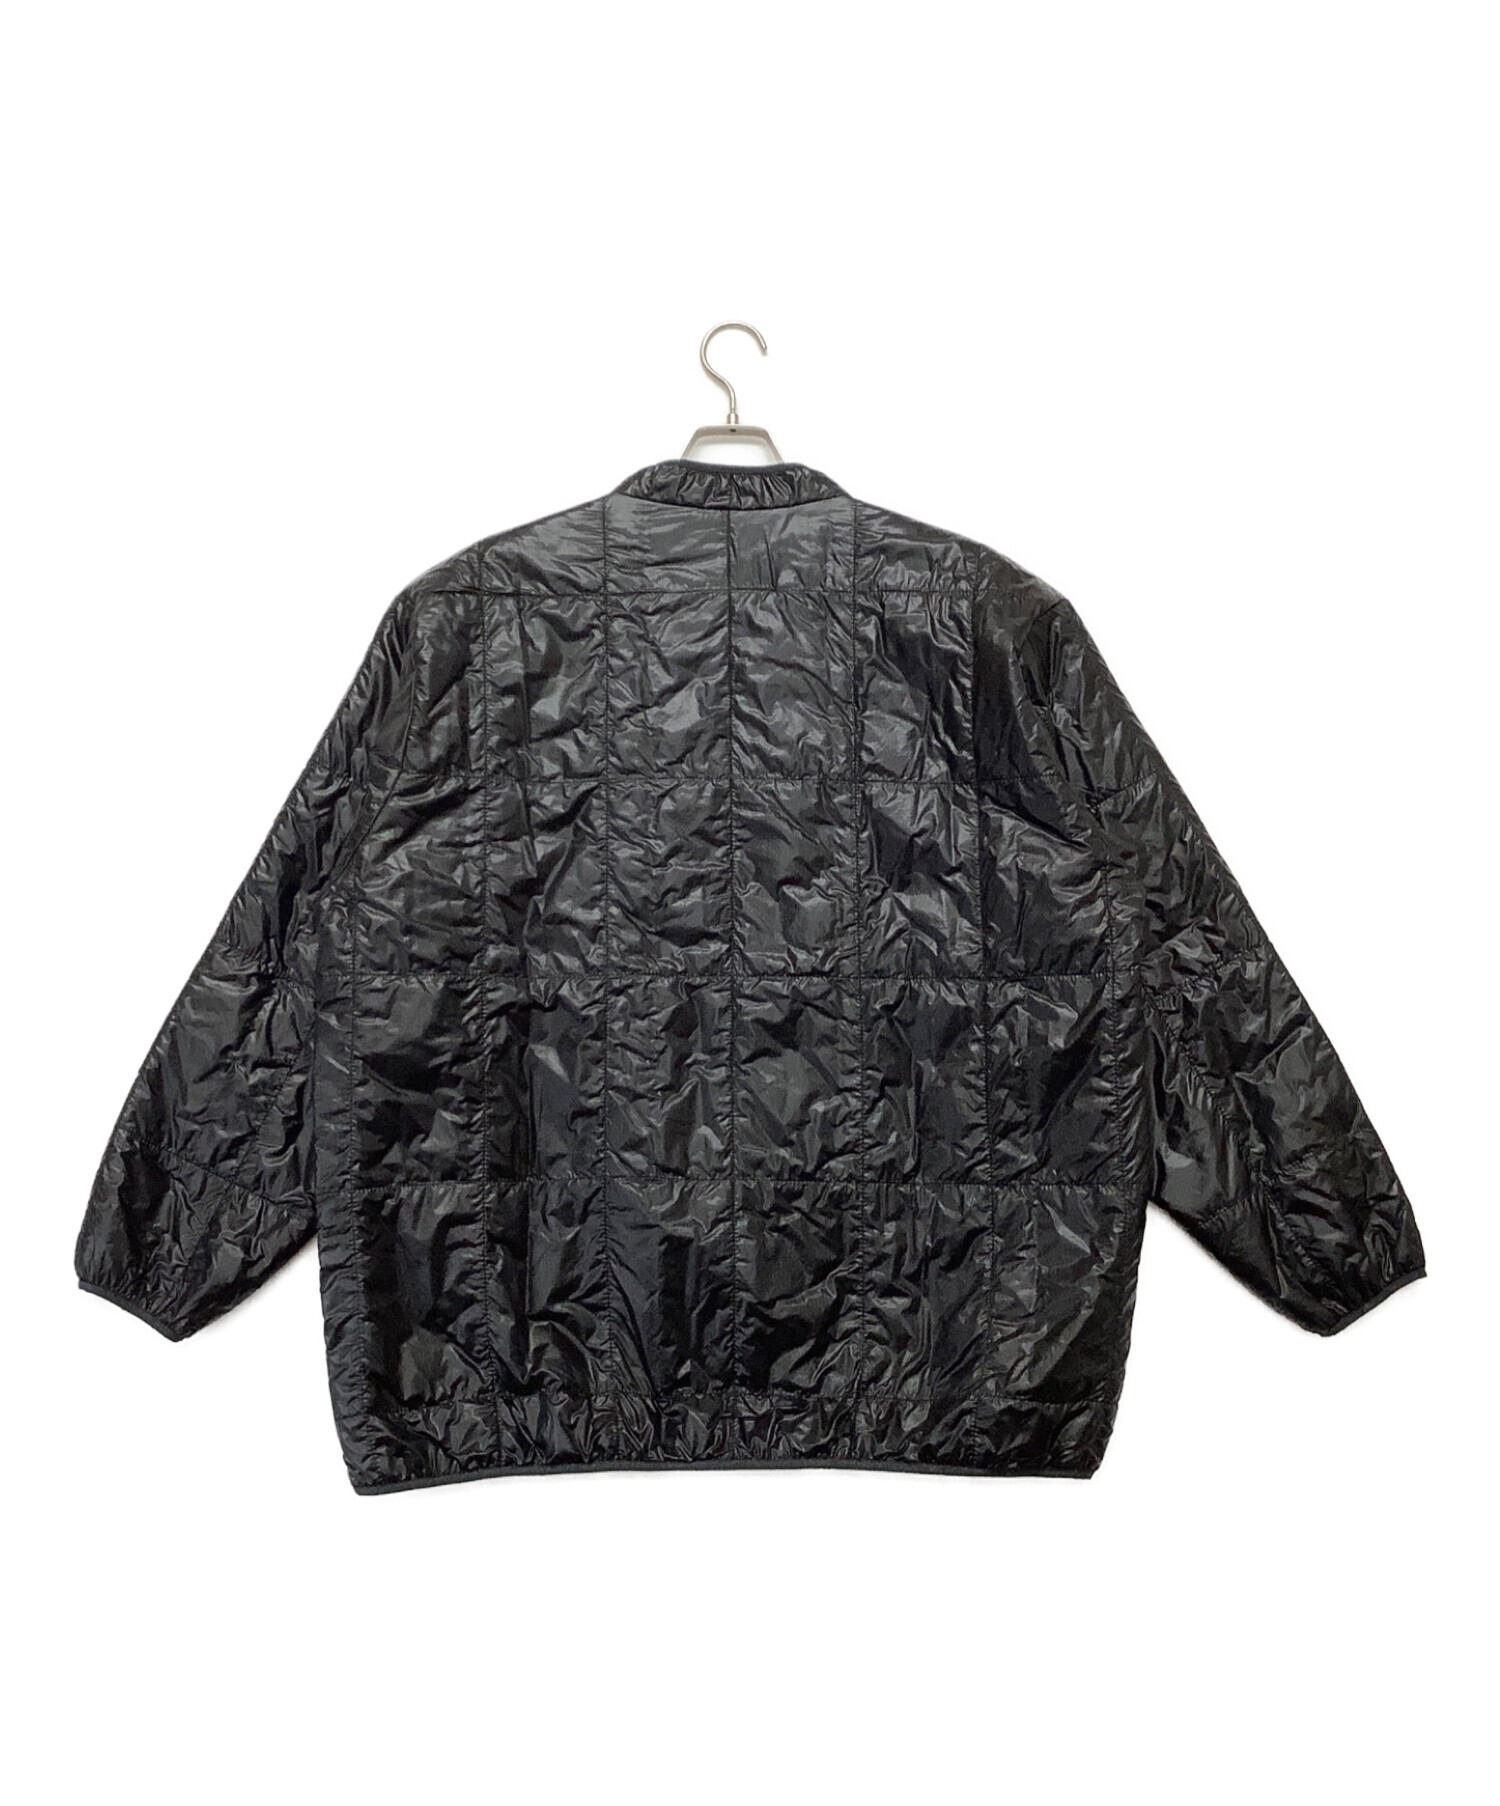 Needles (ニードルス) Piping Quilt Jacket - Nylon Ripstop ブラック サイズ:M